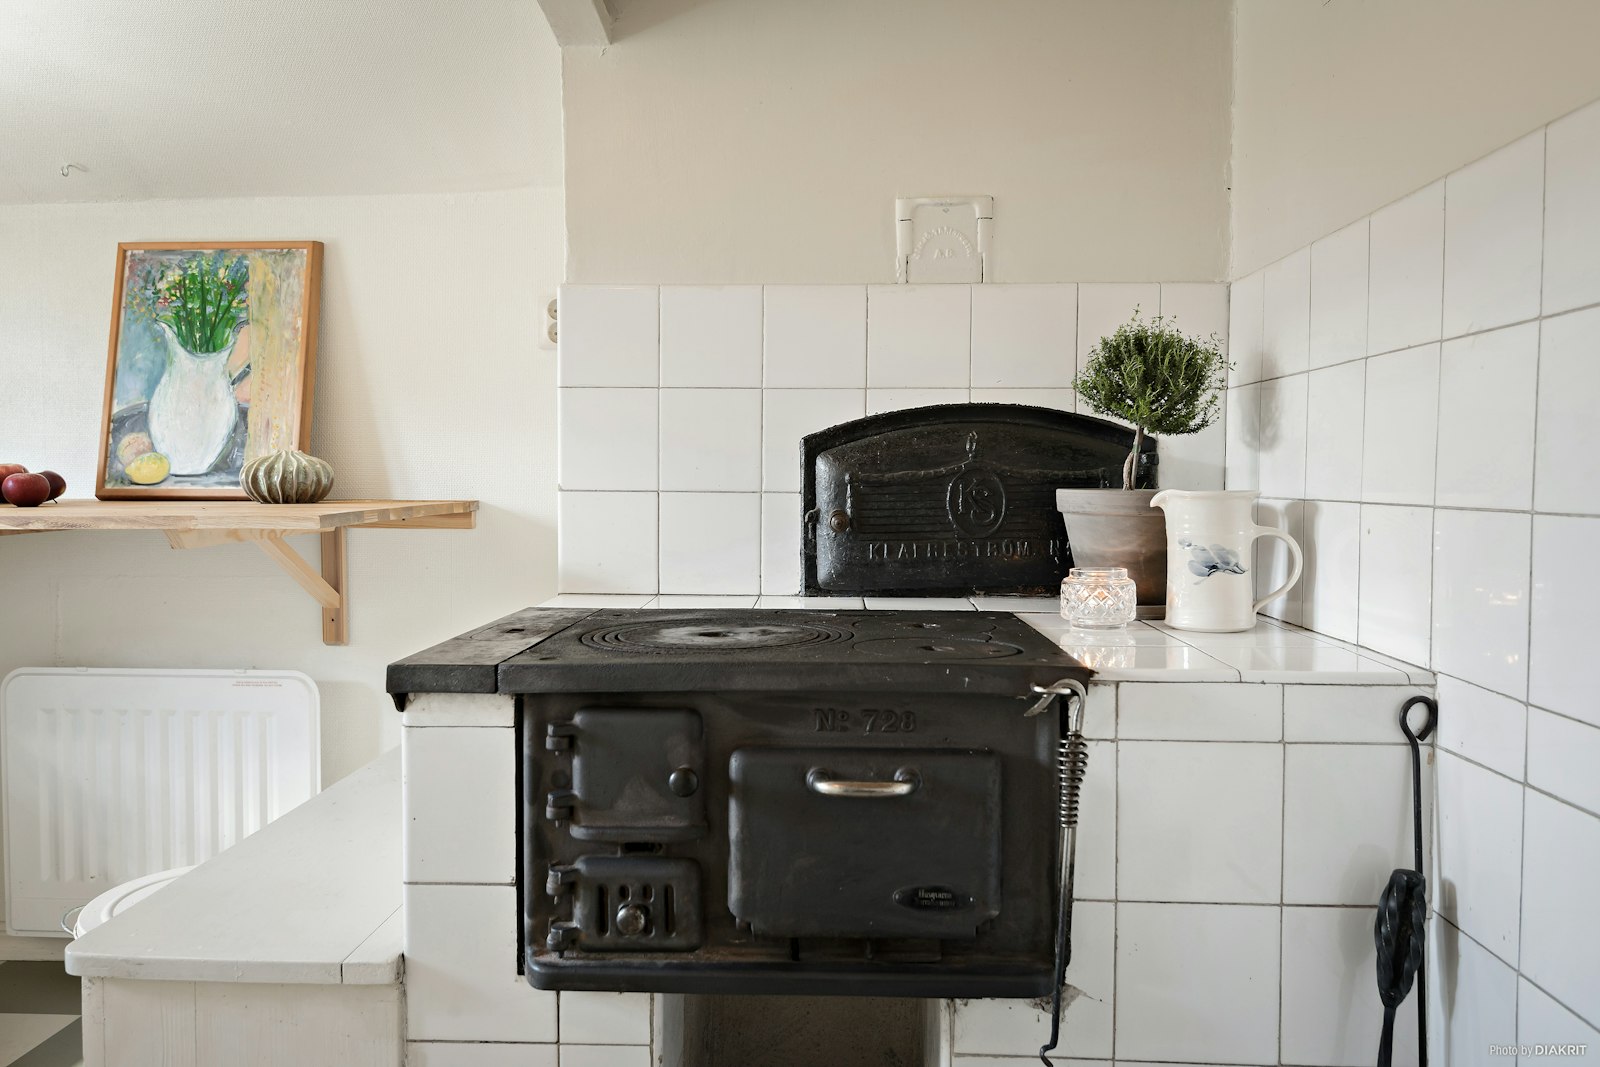 Kök - Torpet byggt 1800-talet (Vedspis behövs renoveras)